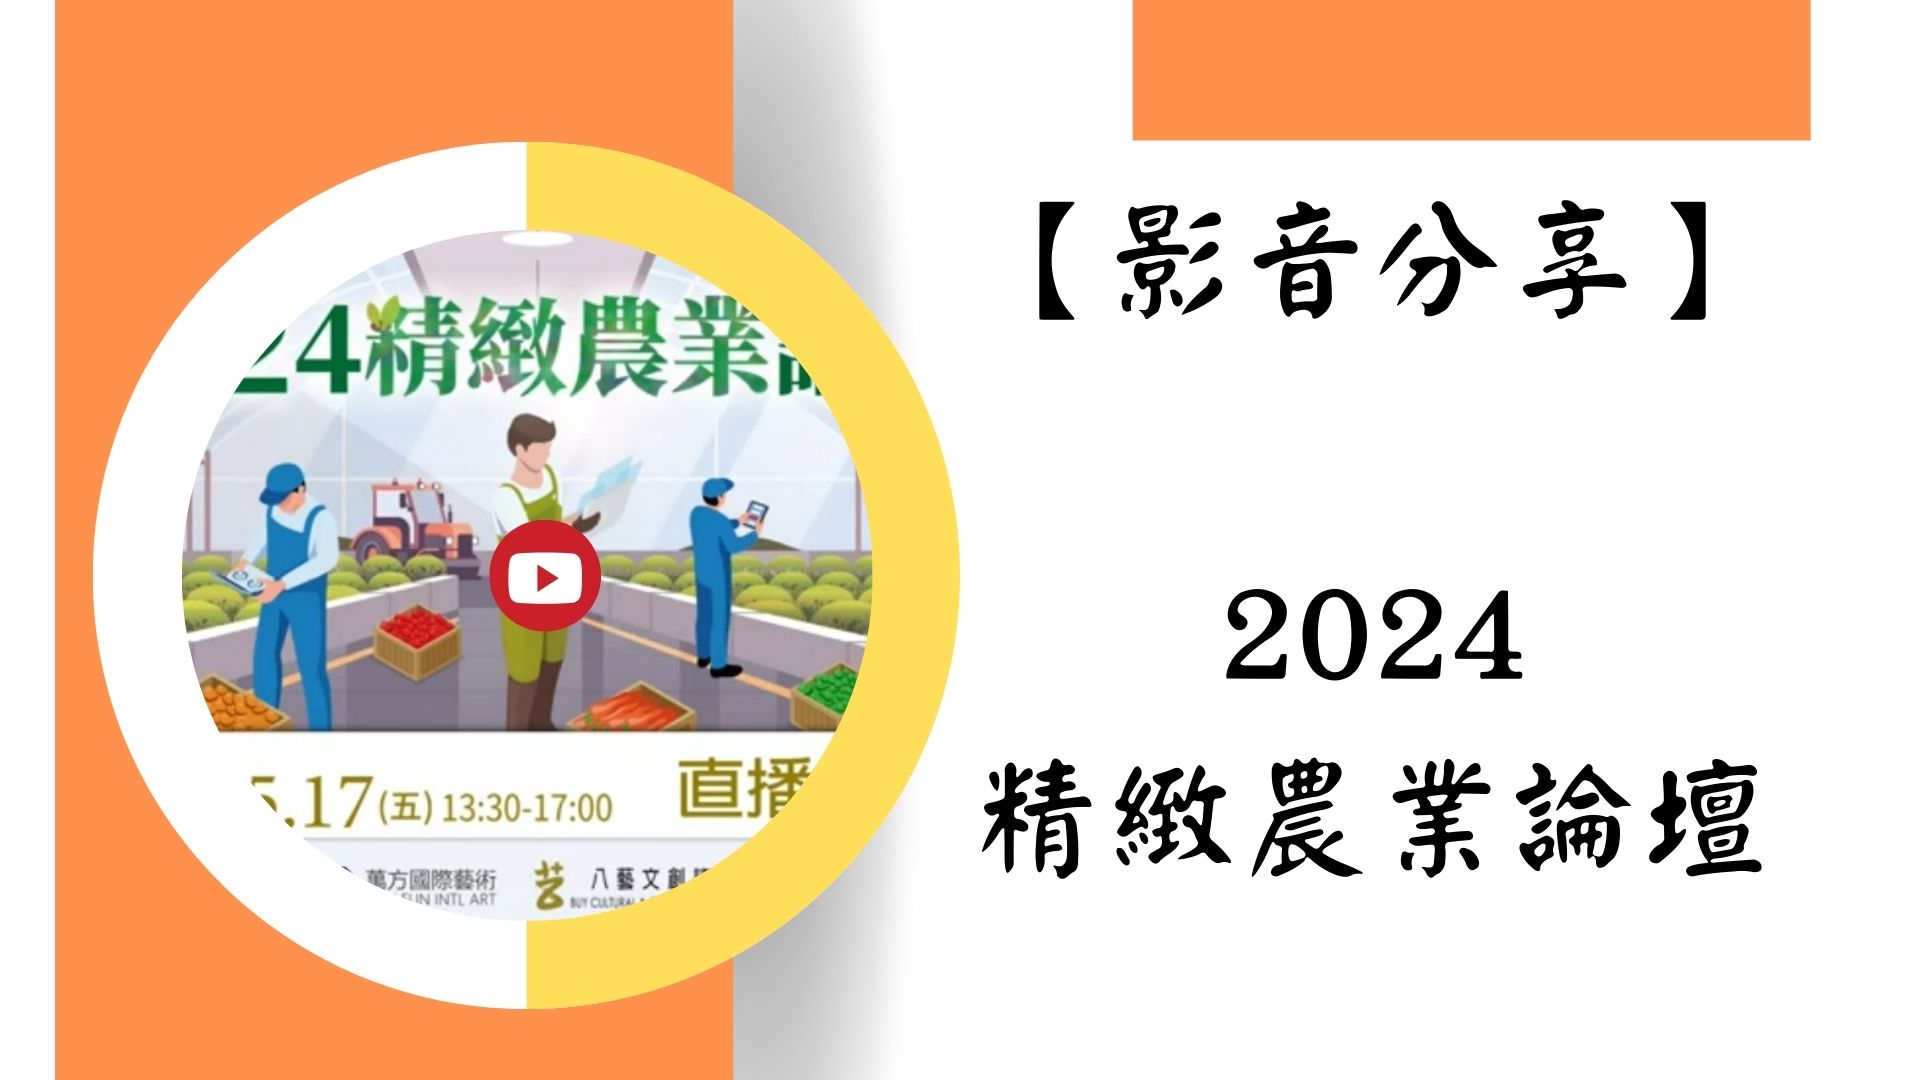 【影音分享】2024精緻農業論壇